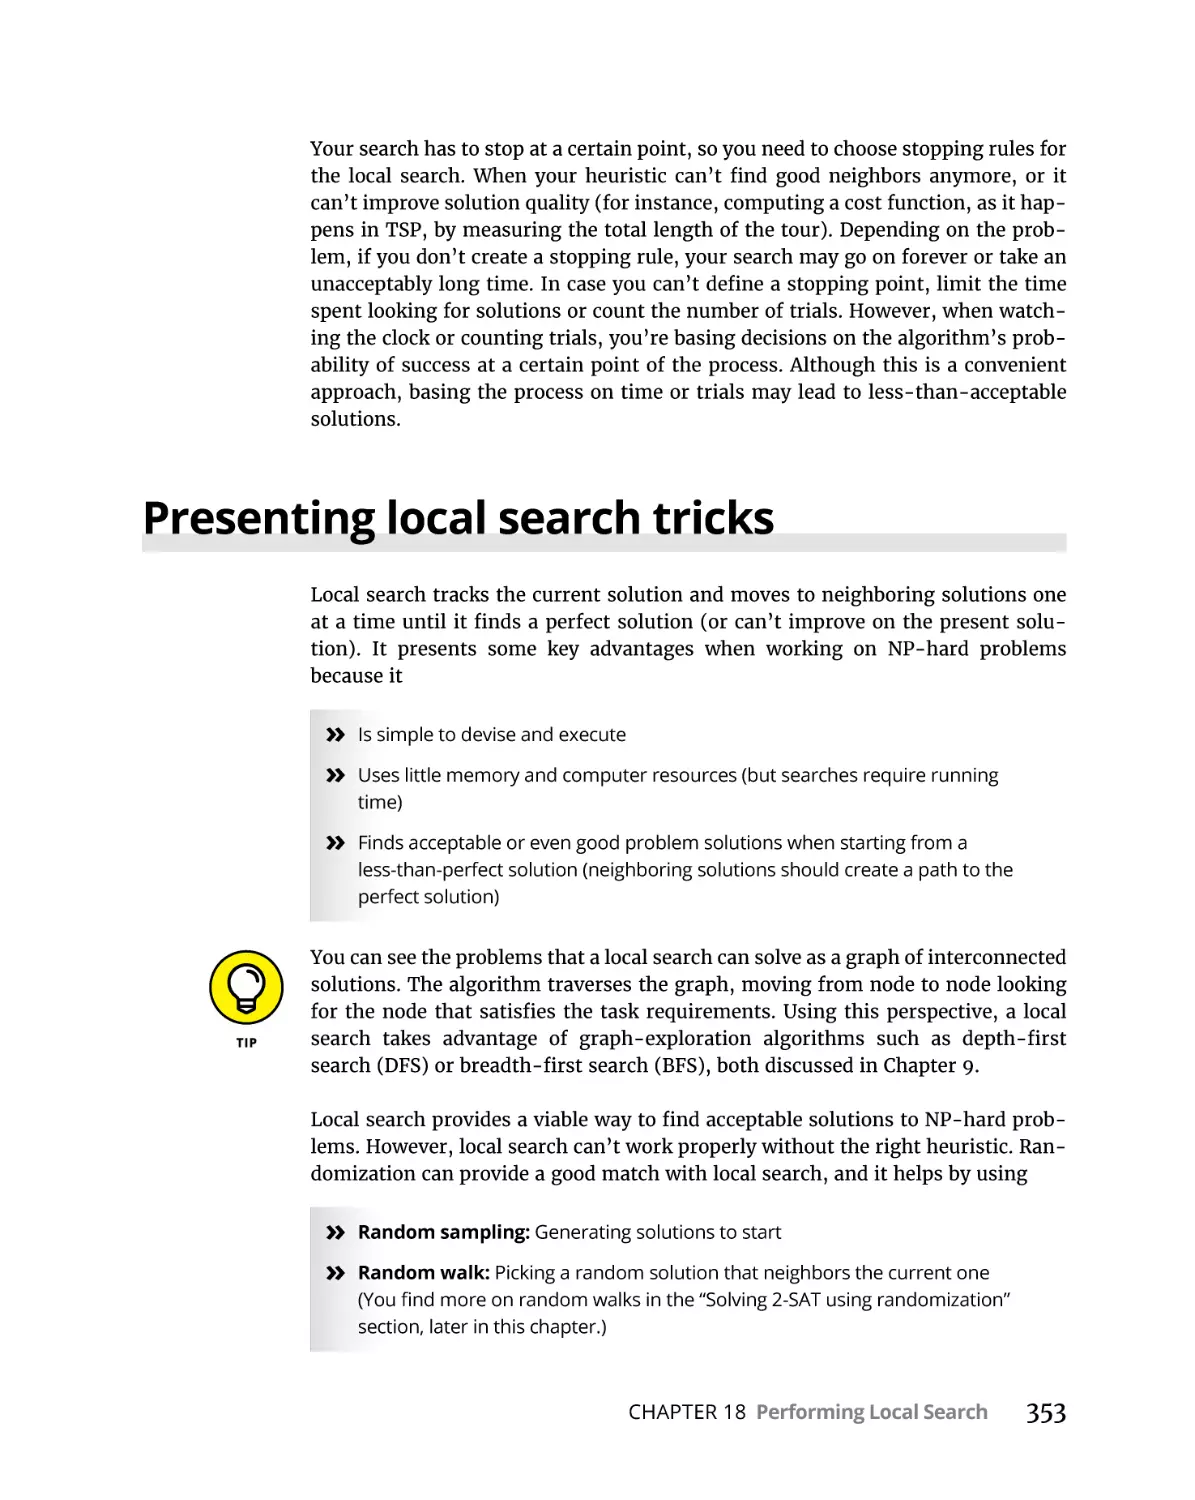 Presenting local search tricks